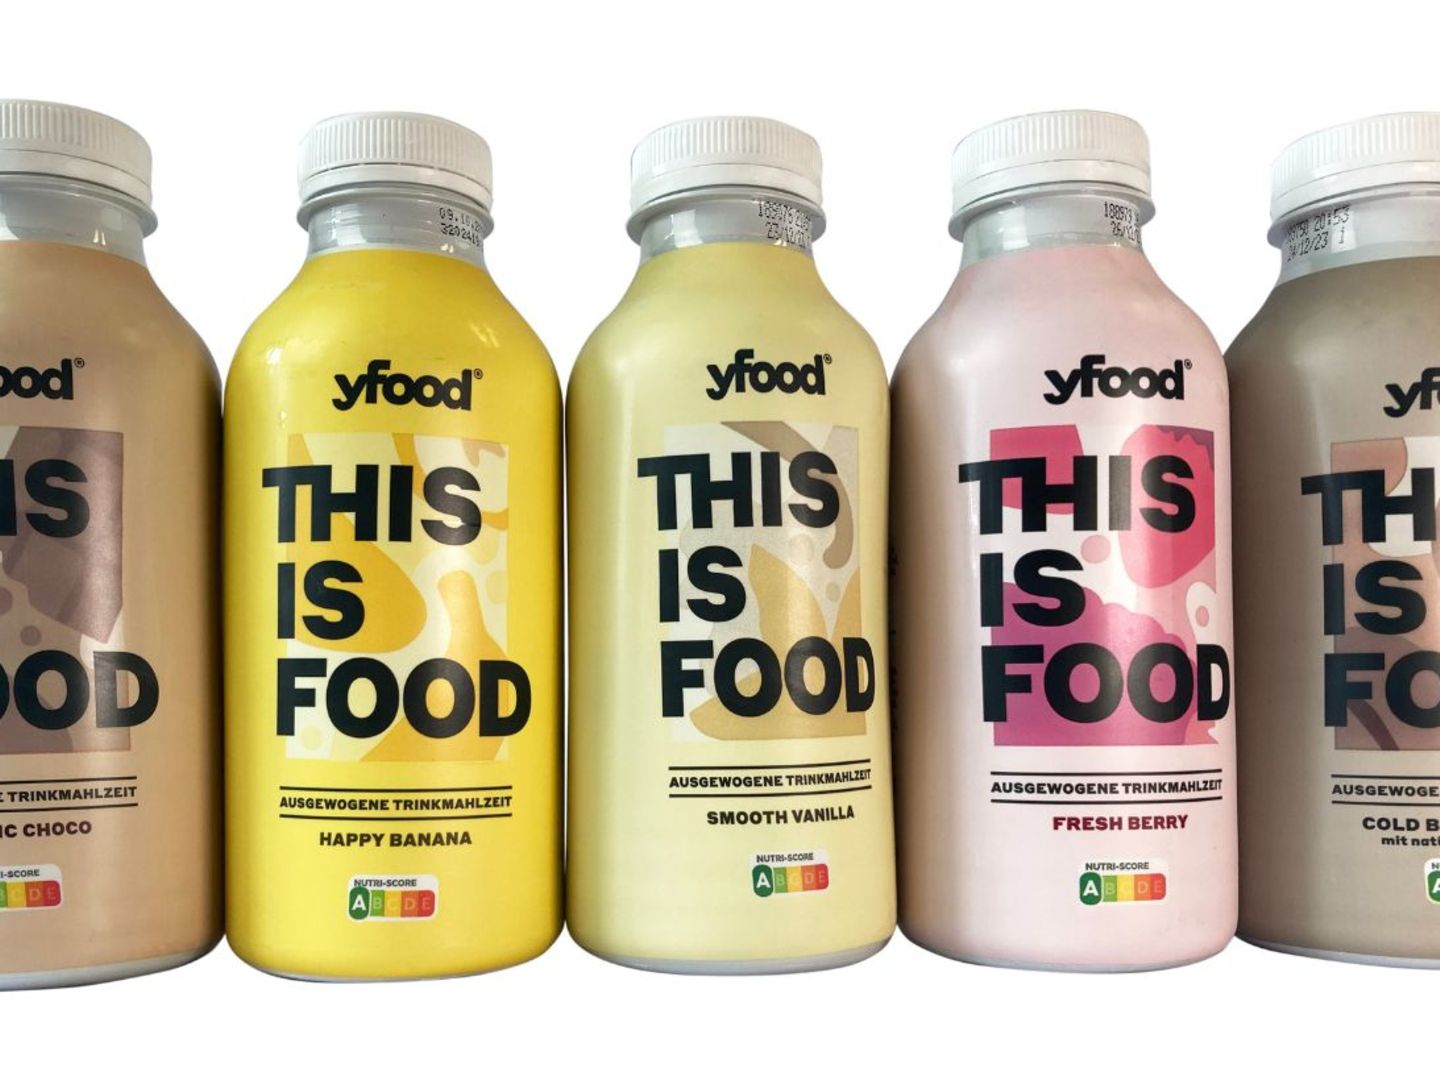 Yfood wehrt sich gegen Werbelügen-Vorwurf von Foodwatch